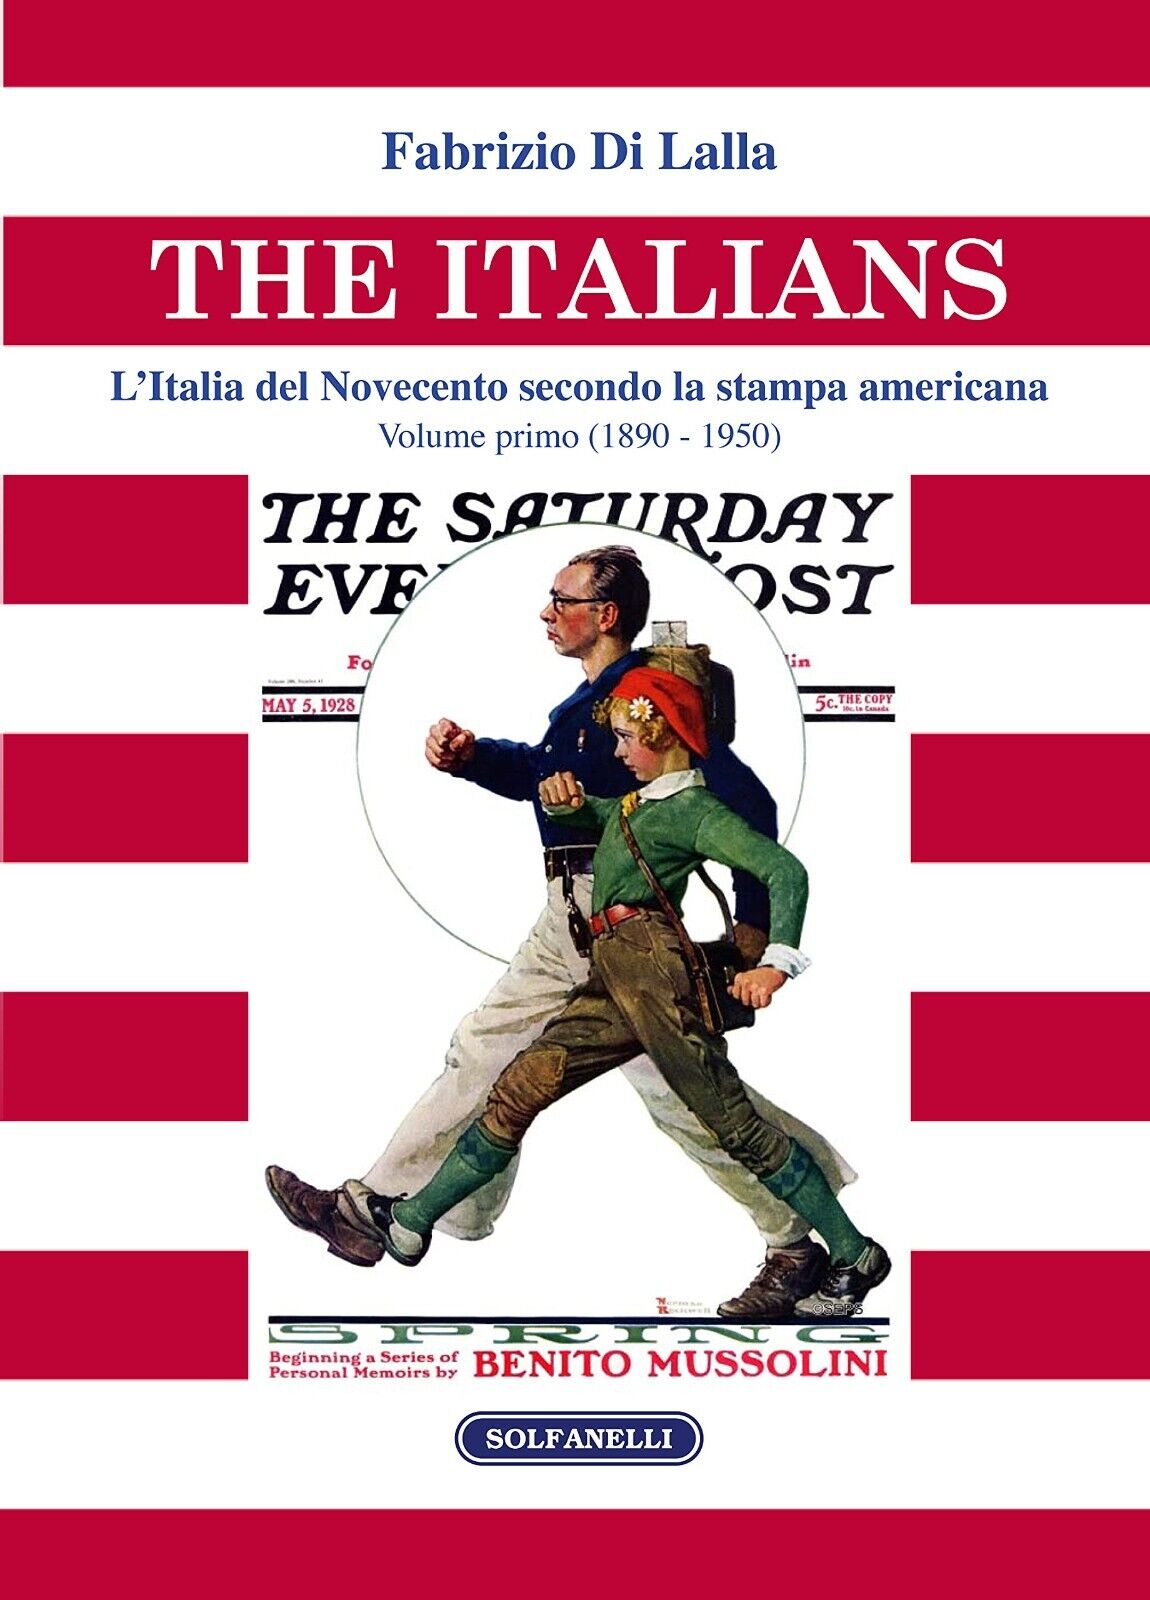 The italians. L'Italia del Novecento secondo la stampa americana Volume primo (1